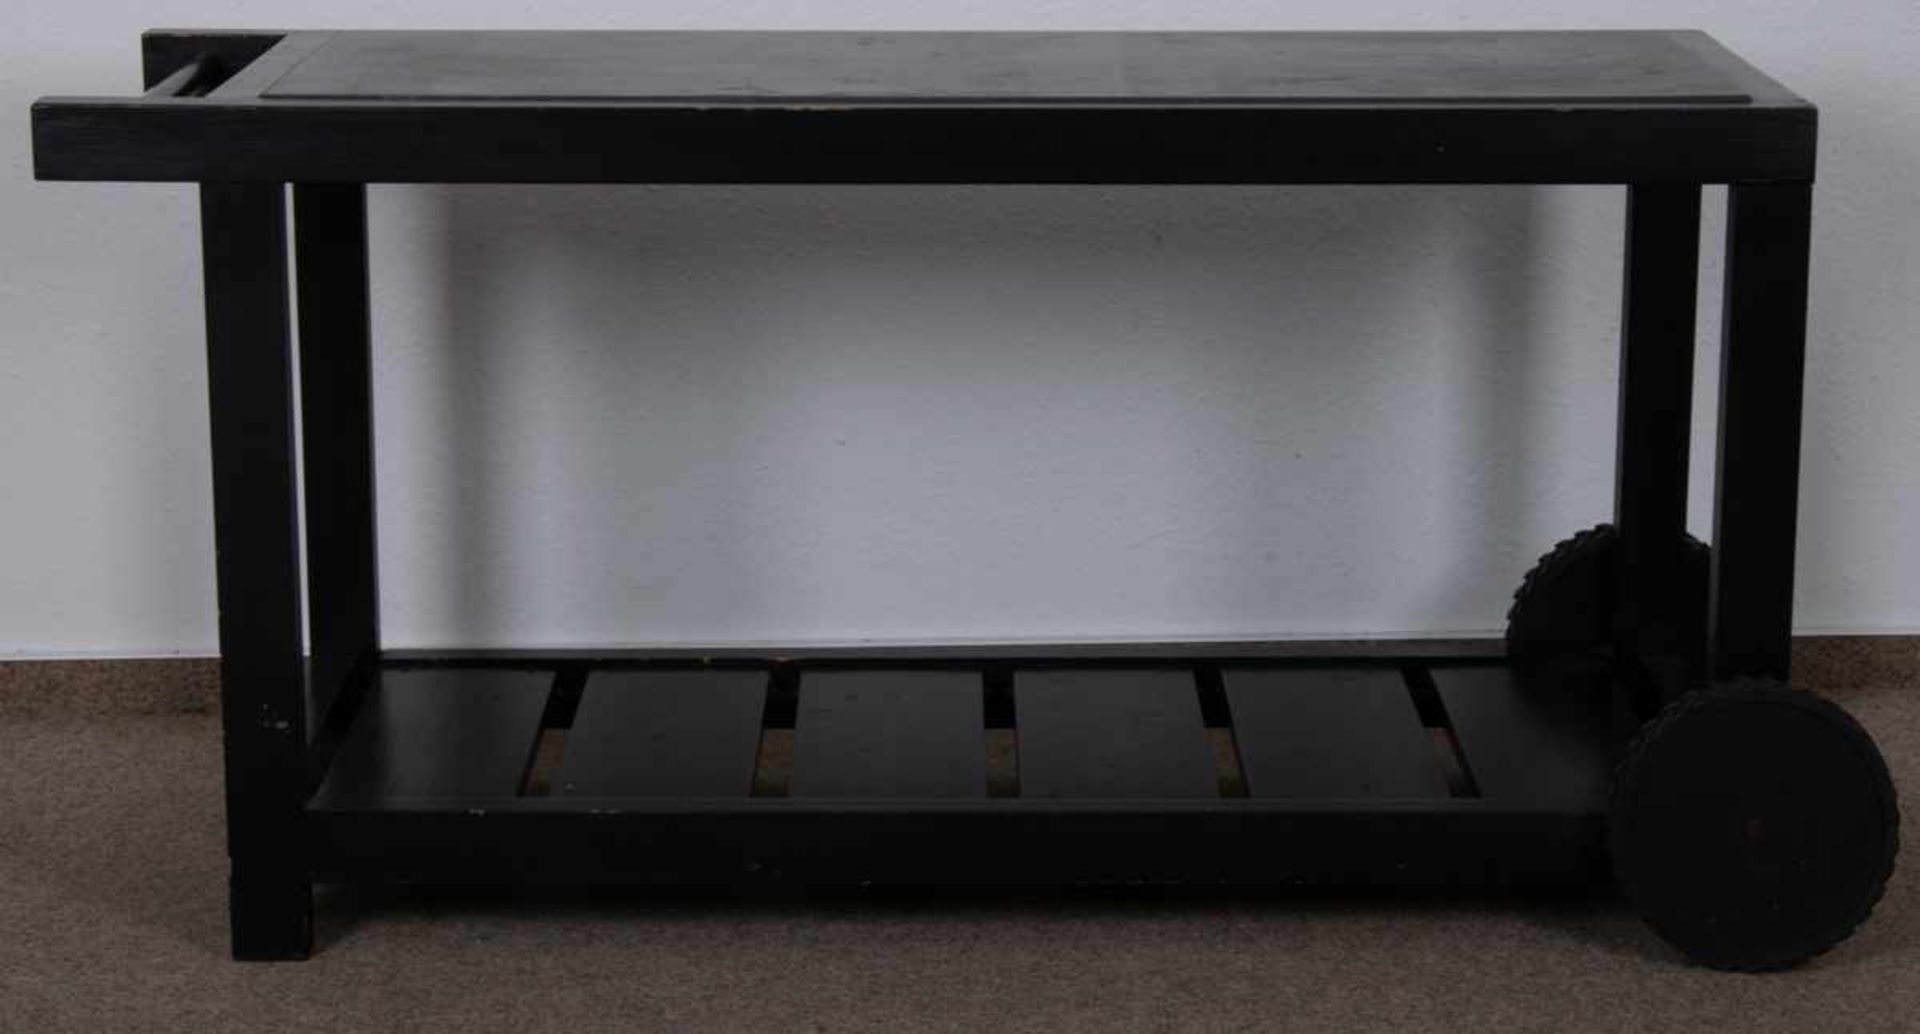 Rollbarer Gartentisch, schwarz lackiertes Nadelholz auf Kunststoffrollen gelagert/bedingt beweglich, - Bild 4 aus 6